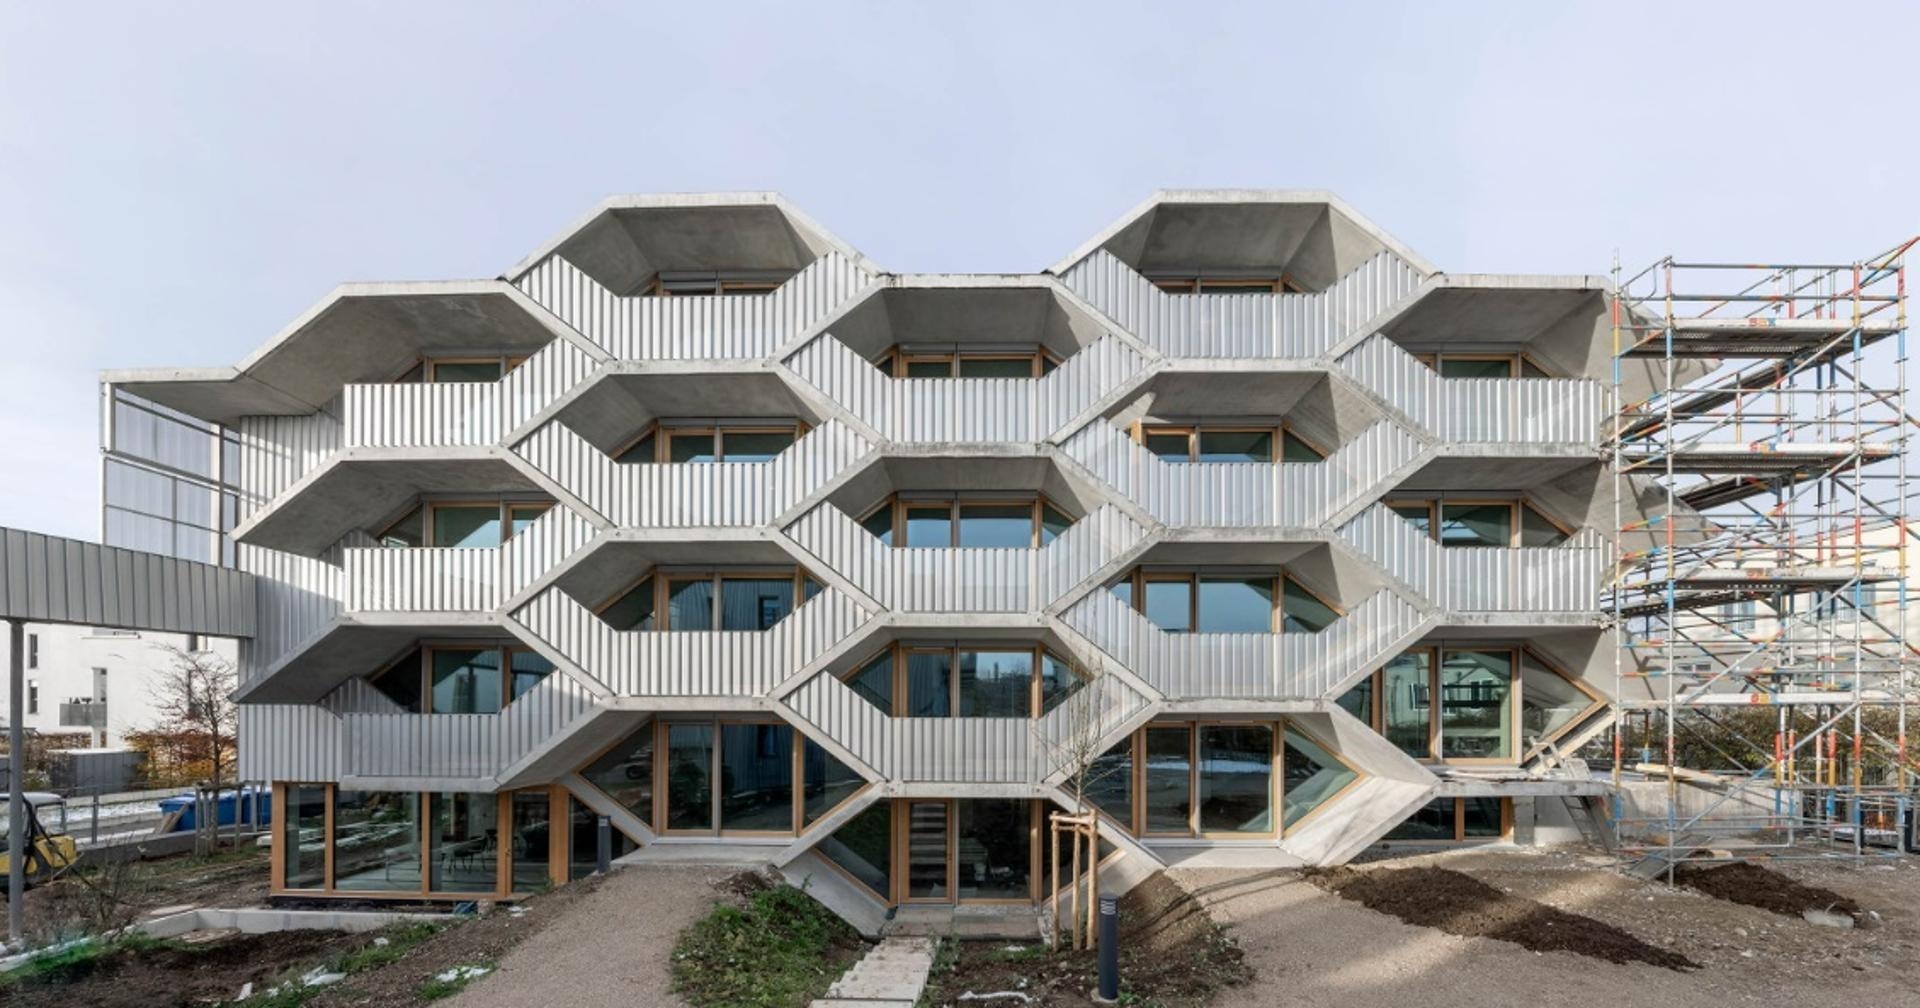 این خانه عجیب؛ نگاه متفاوت معمار آلمانی برای افزایش جذابیت آپارتمان نشینی(+تصاویر)